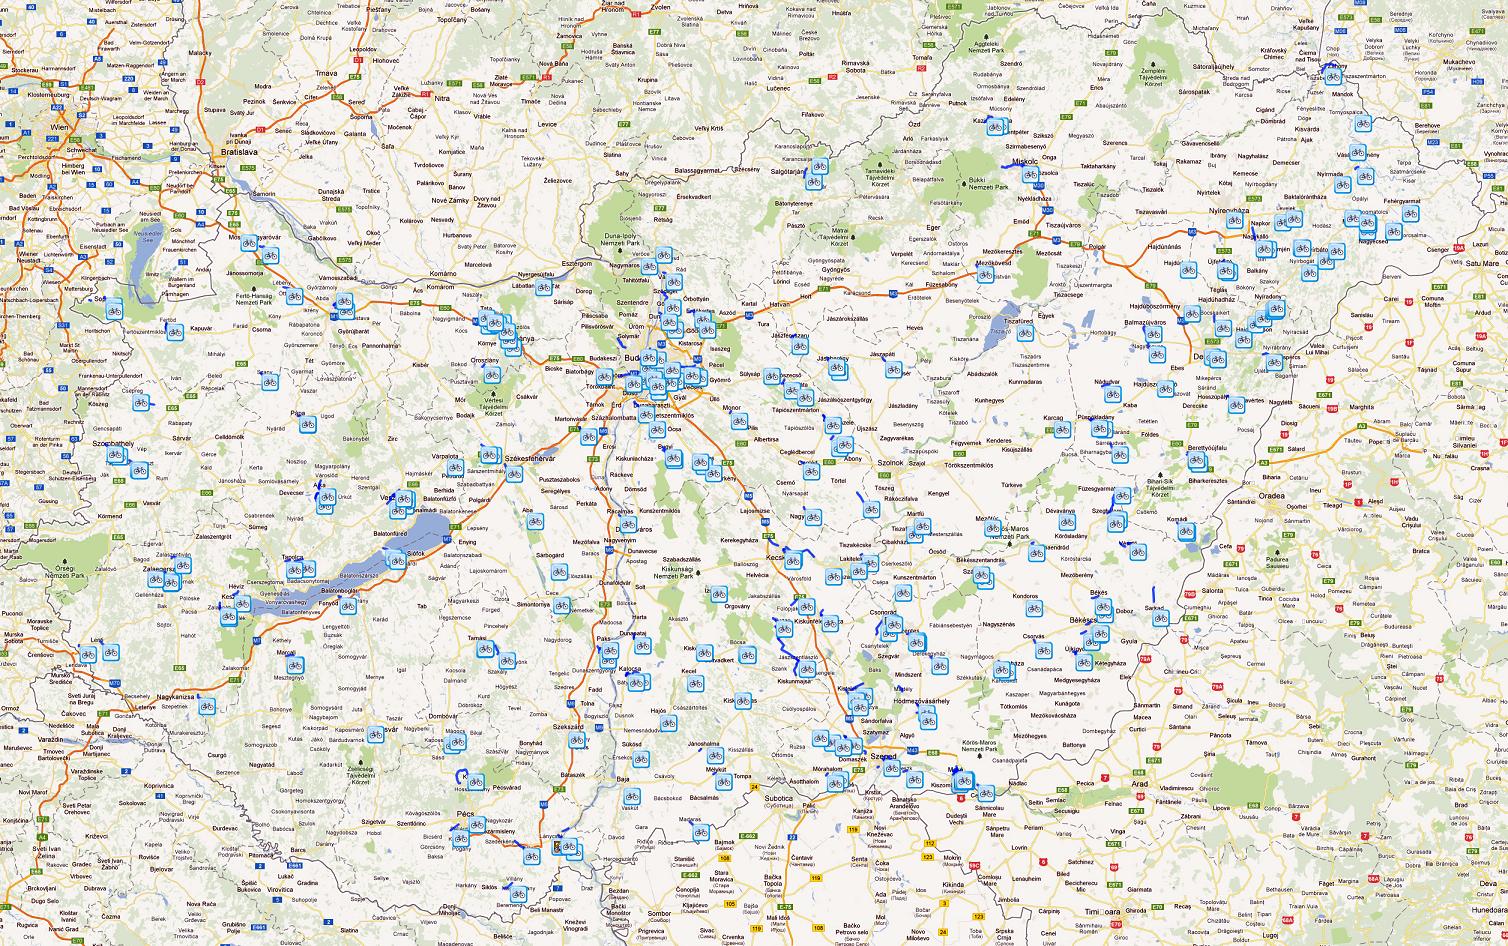 biciklis térkép Magyarország kerékpáros térképe   Biciklopédia biciklis térkép